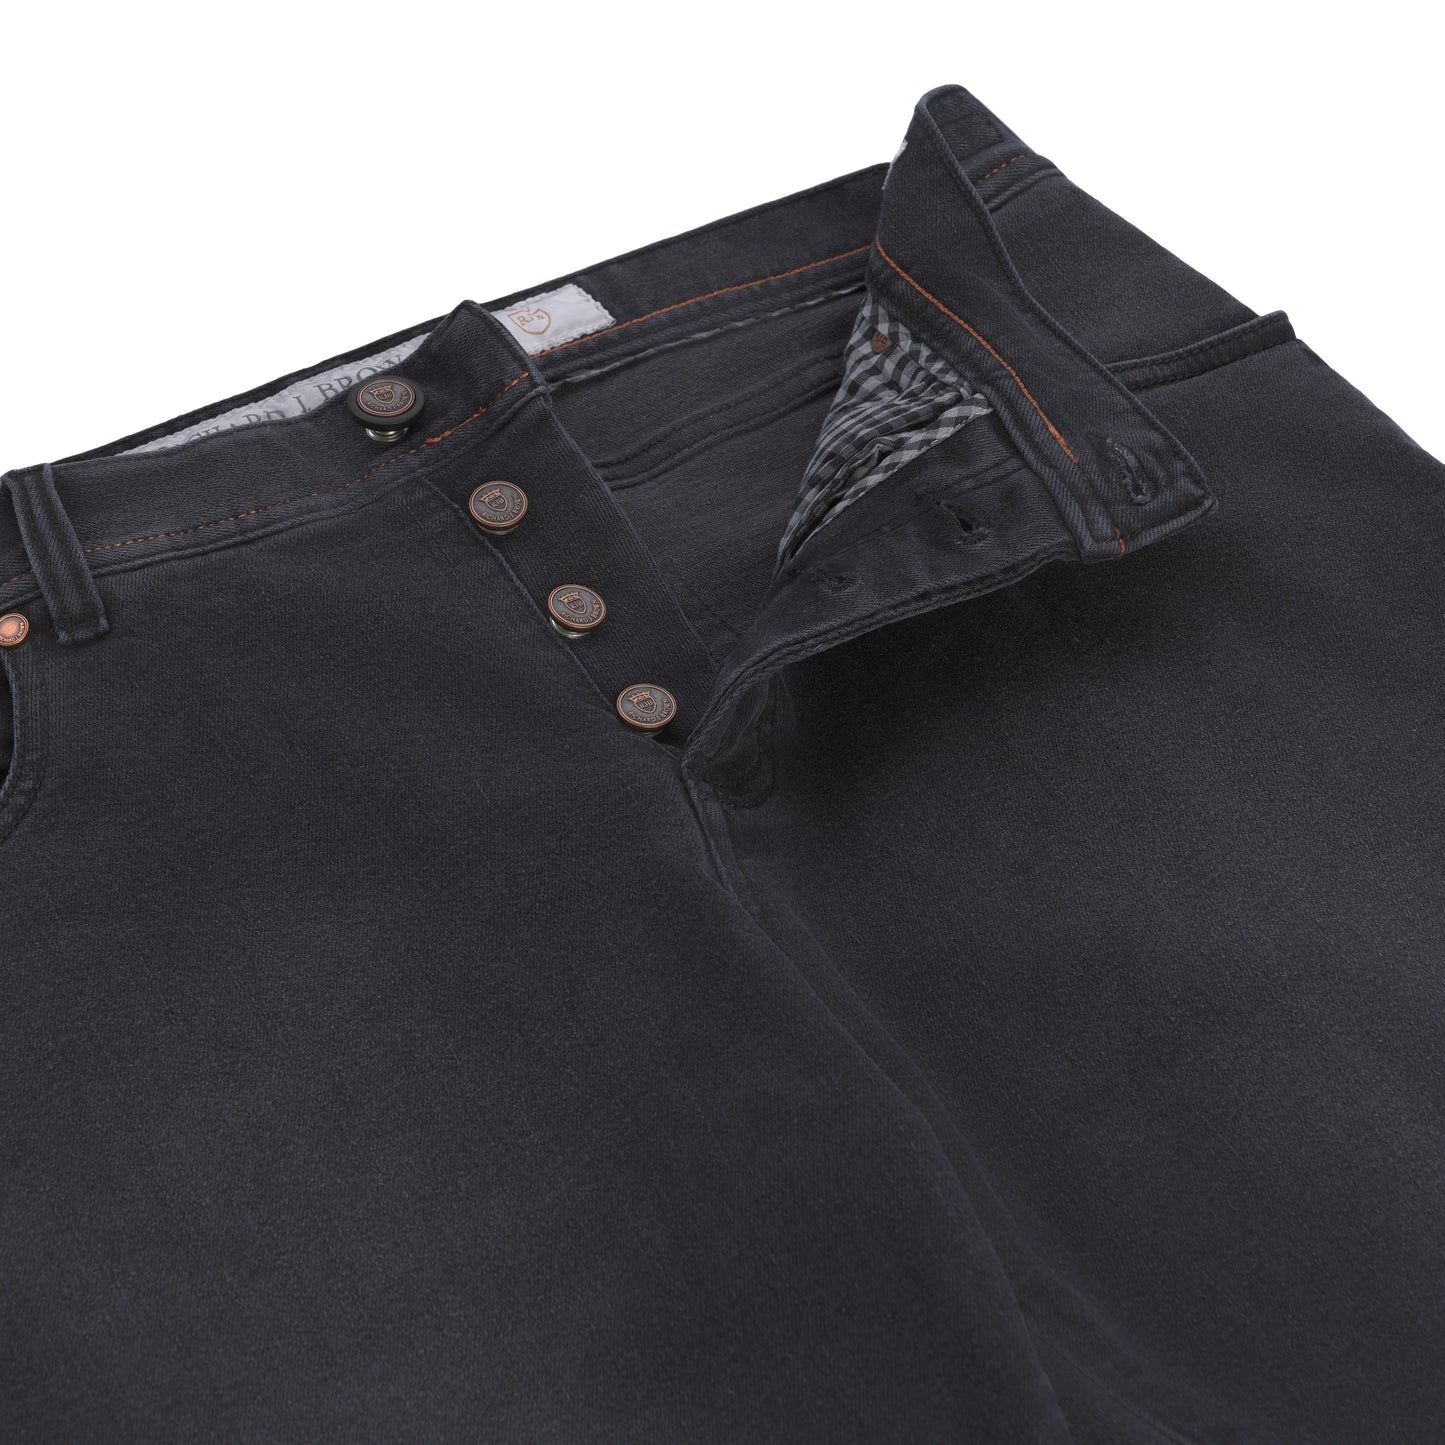 Jeans aus Stretch-Baumwolle in Dunkelgrau mit Knopfverschluss